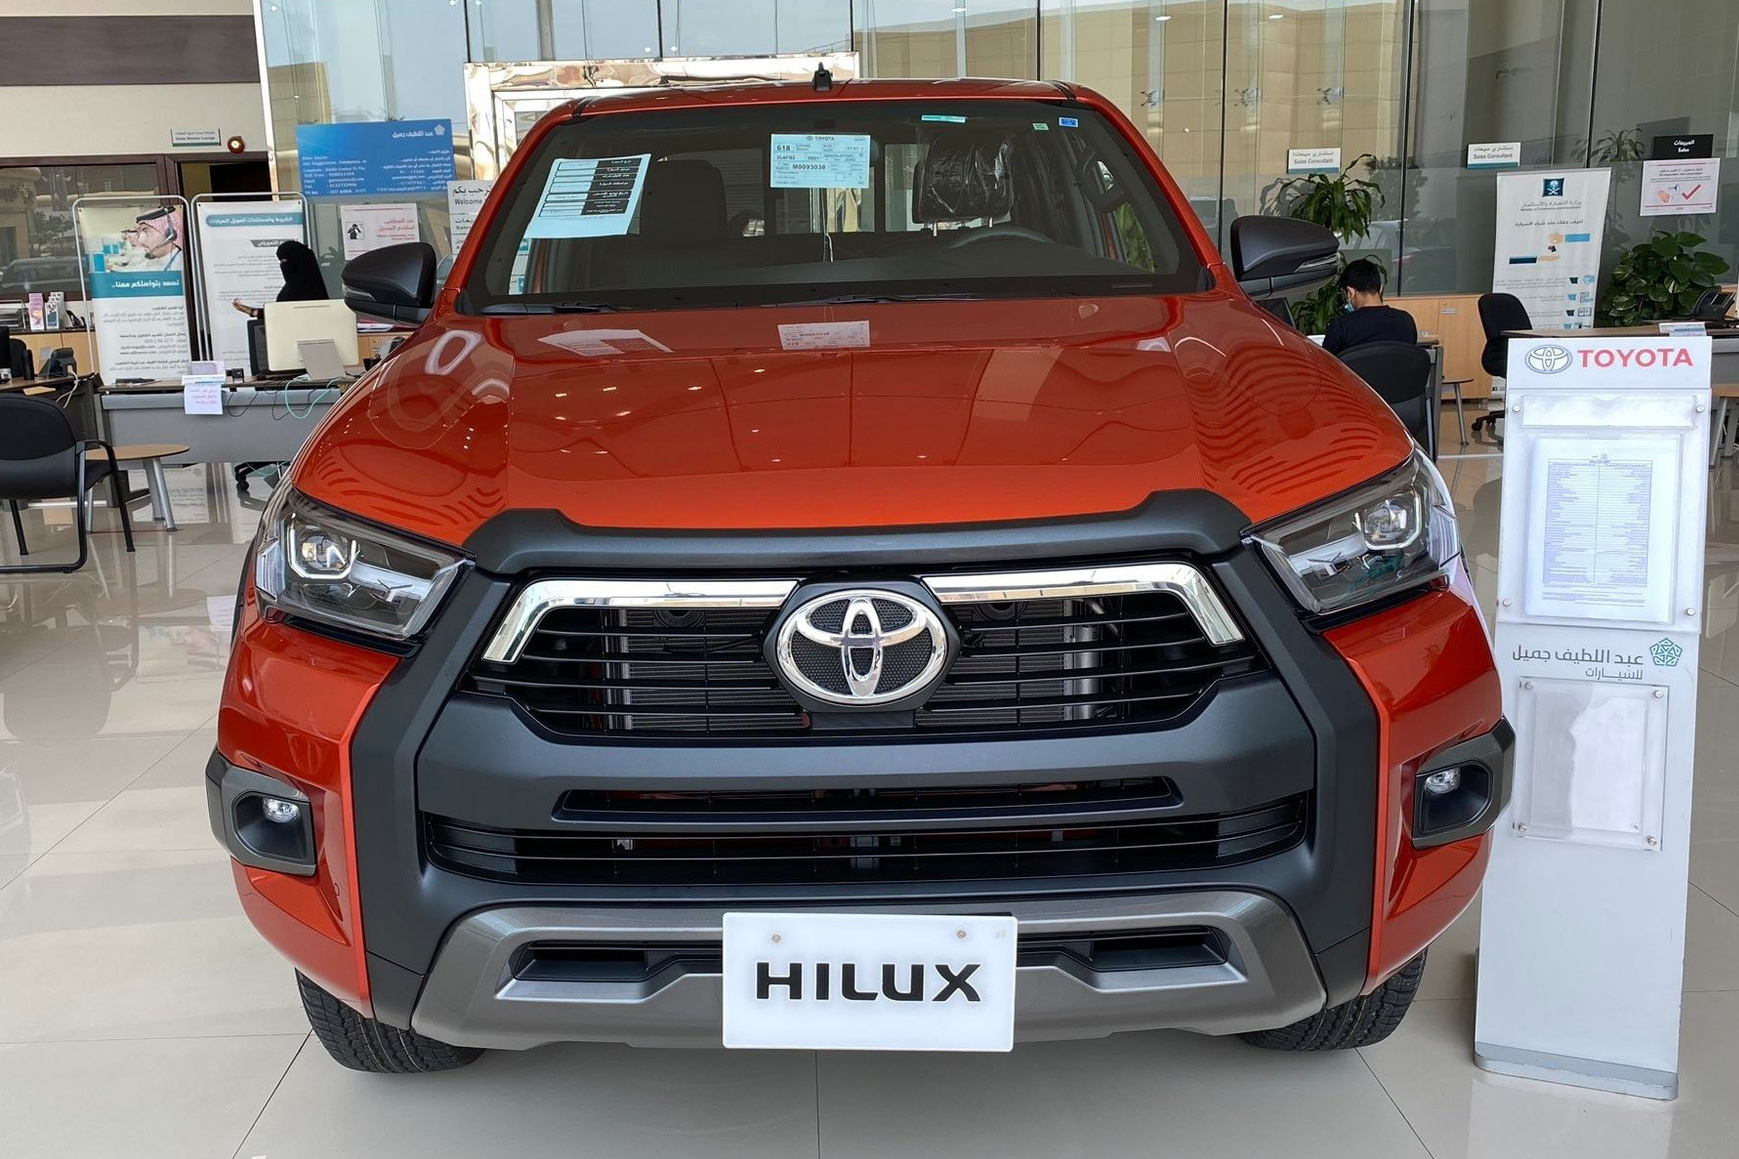 Đại lý ồ ạt chào cọc Toyota Hilux 2021 tại Việt Nam: Giá dự kiến không đổi, đầu xe giống RAV4, đe doạ Ford Ranger